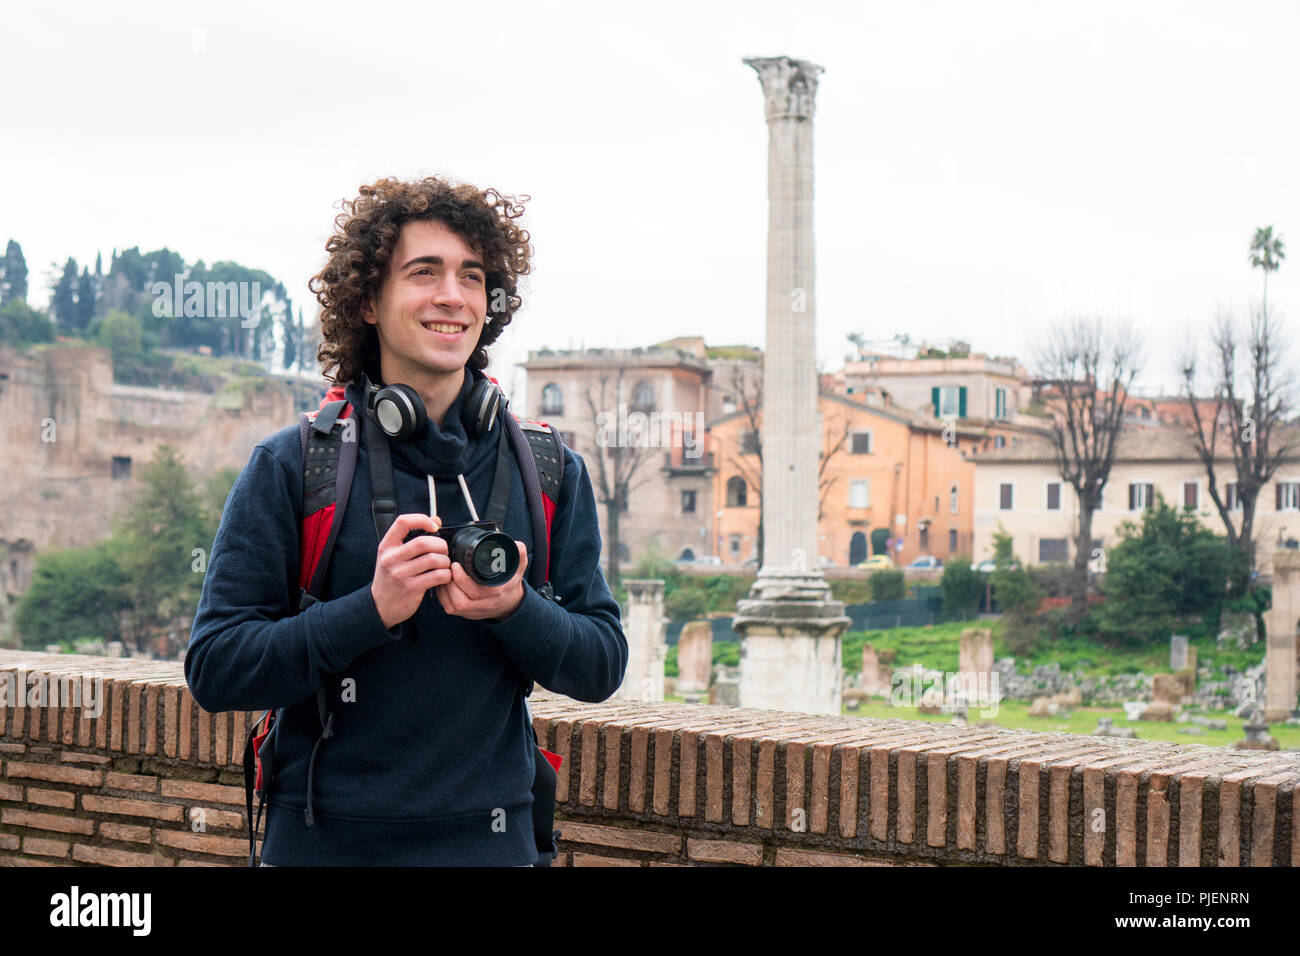 Hübscher junger Tourist mit lockigem Haar Fotos von Forum Romanum in Rom, Italien. Junger Mann mit seiner Kamera Stockfoto